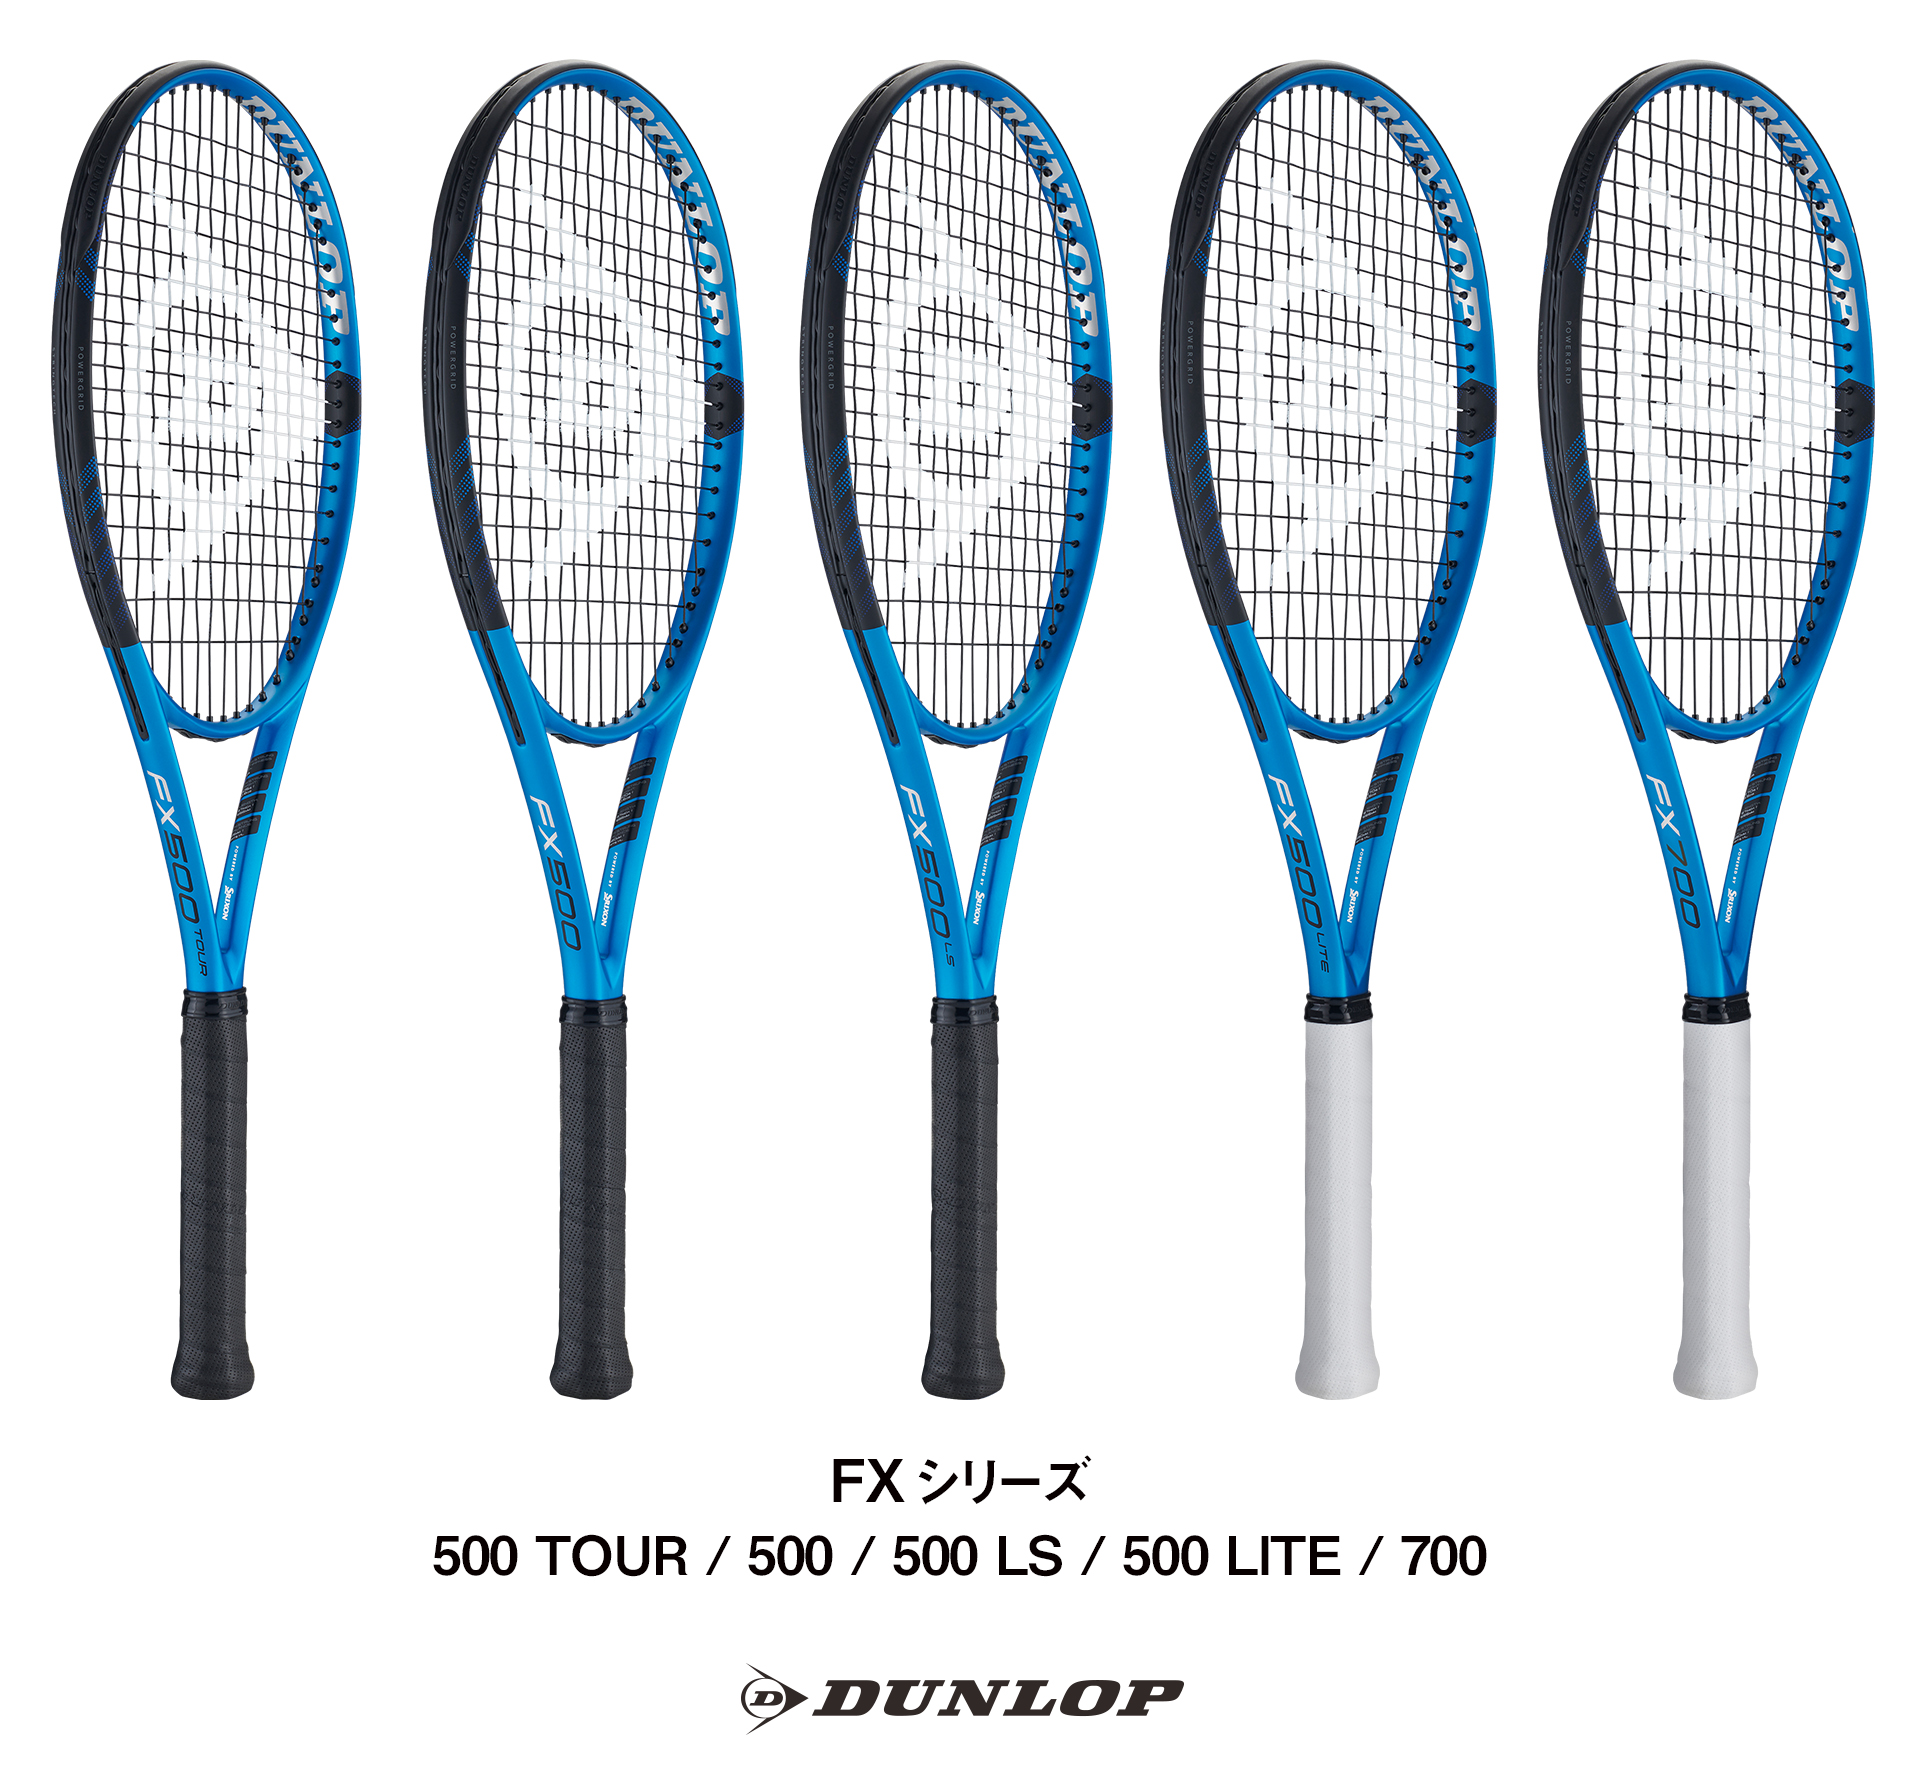 ダンロップテニスラケットNEW「FX（エフエックス）」シリーズ5機種を新 